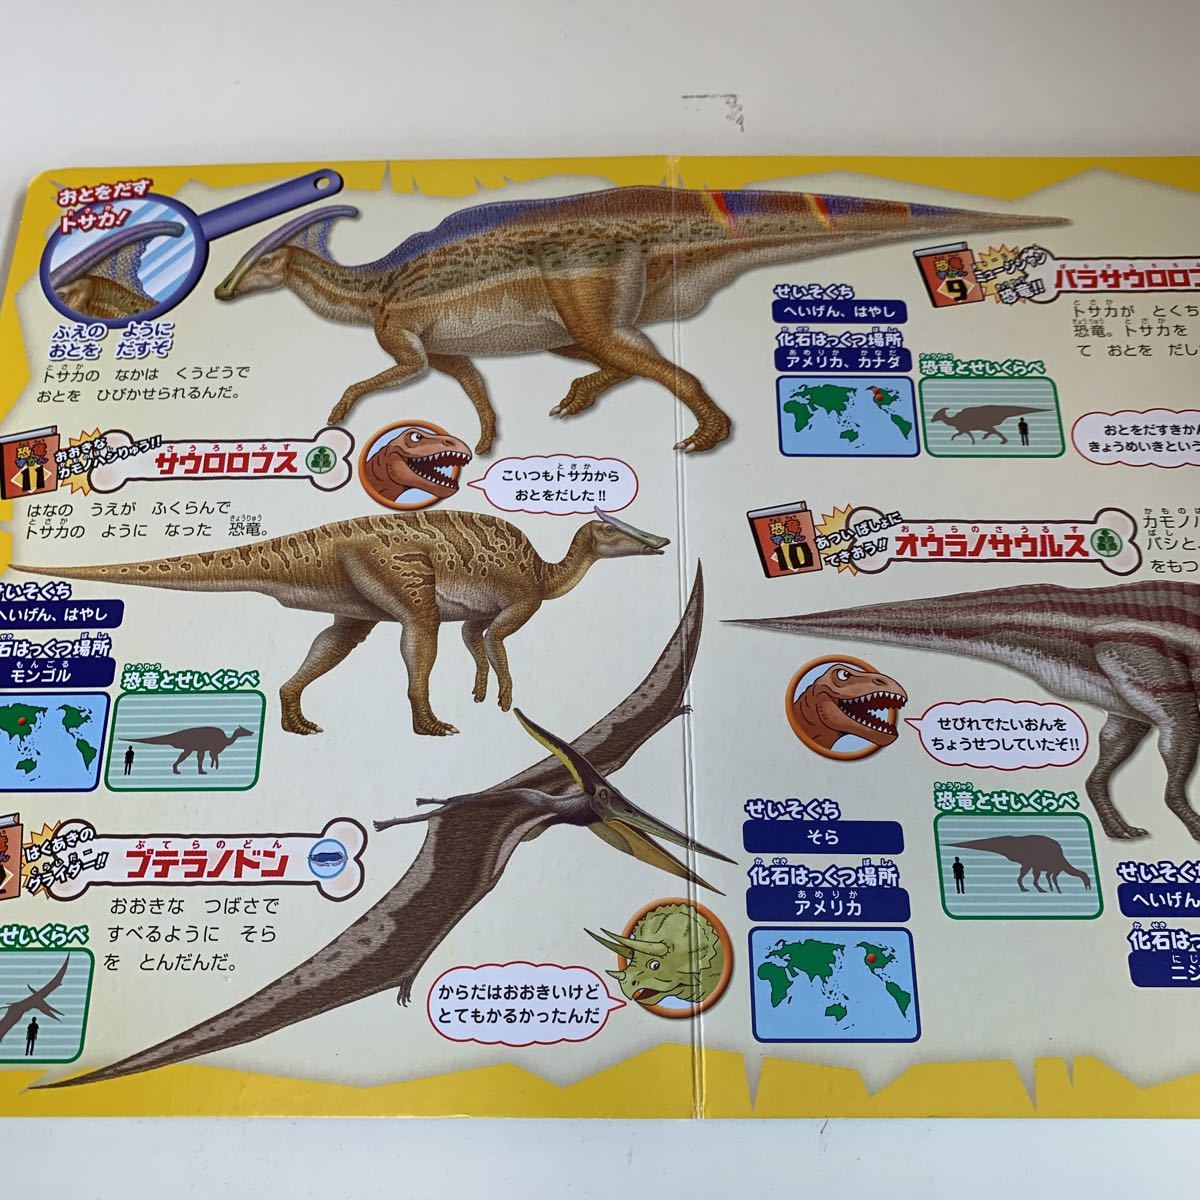 yk225 динозавр фигурка иллюстрированная книга DXtilanosauru ska malasaurus.. лед река период Sugoroku мясо еда животное книга с картинками детский книга с картинками учебная иллюстрированная книга ... книга с картинками 